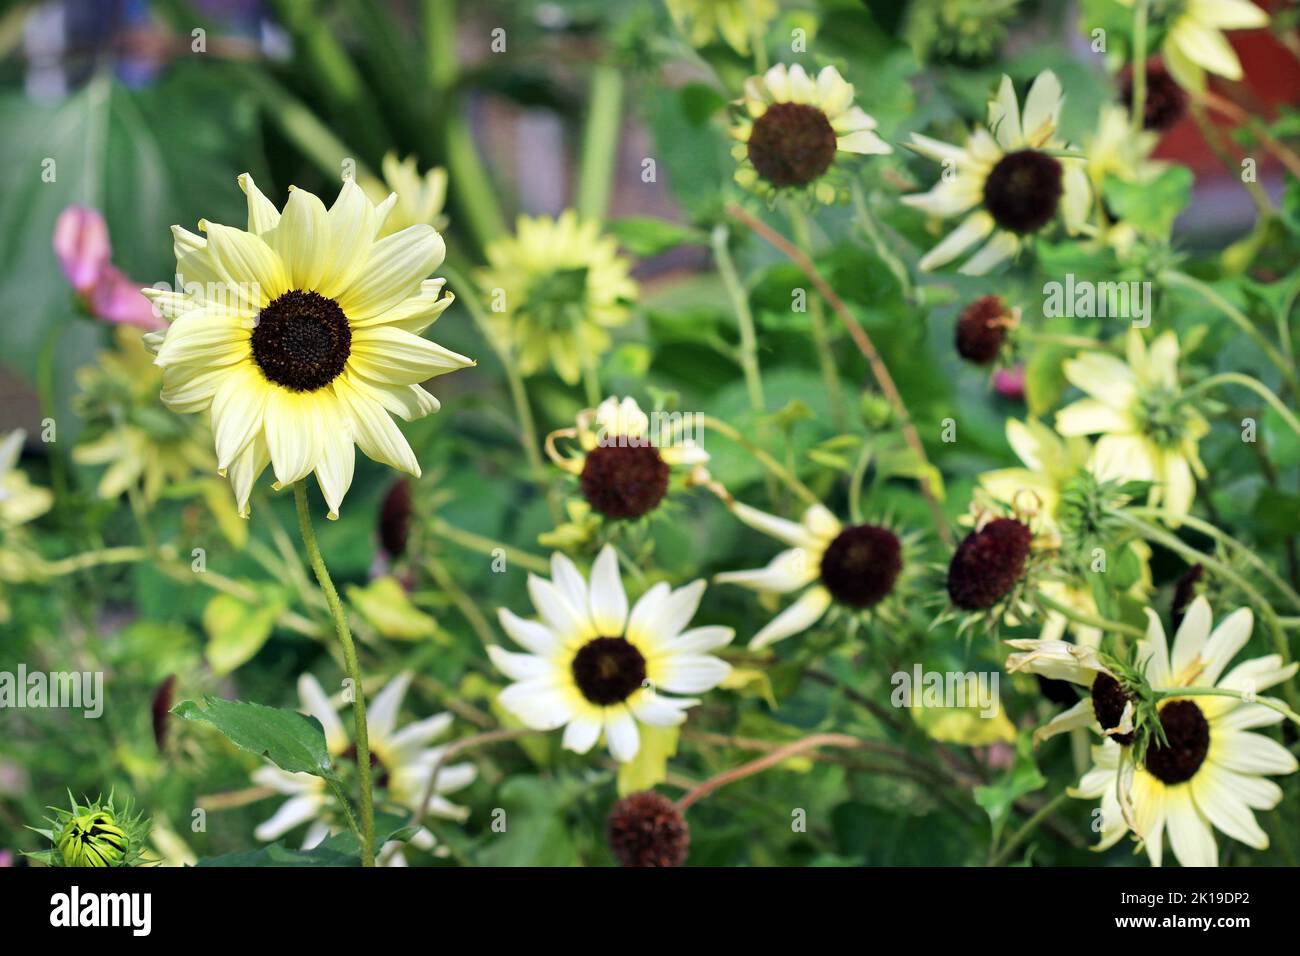 Verworrenes Bett aus Vanille-Eis-Sonnenblumen am Ende der Saison mit einer Sonnenblume, die stolz und perfekt steht. Kew Gardens, England, September Stockfoto